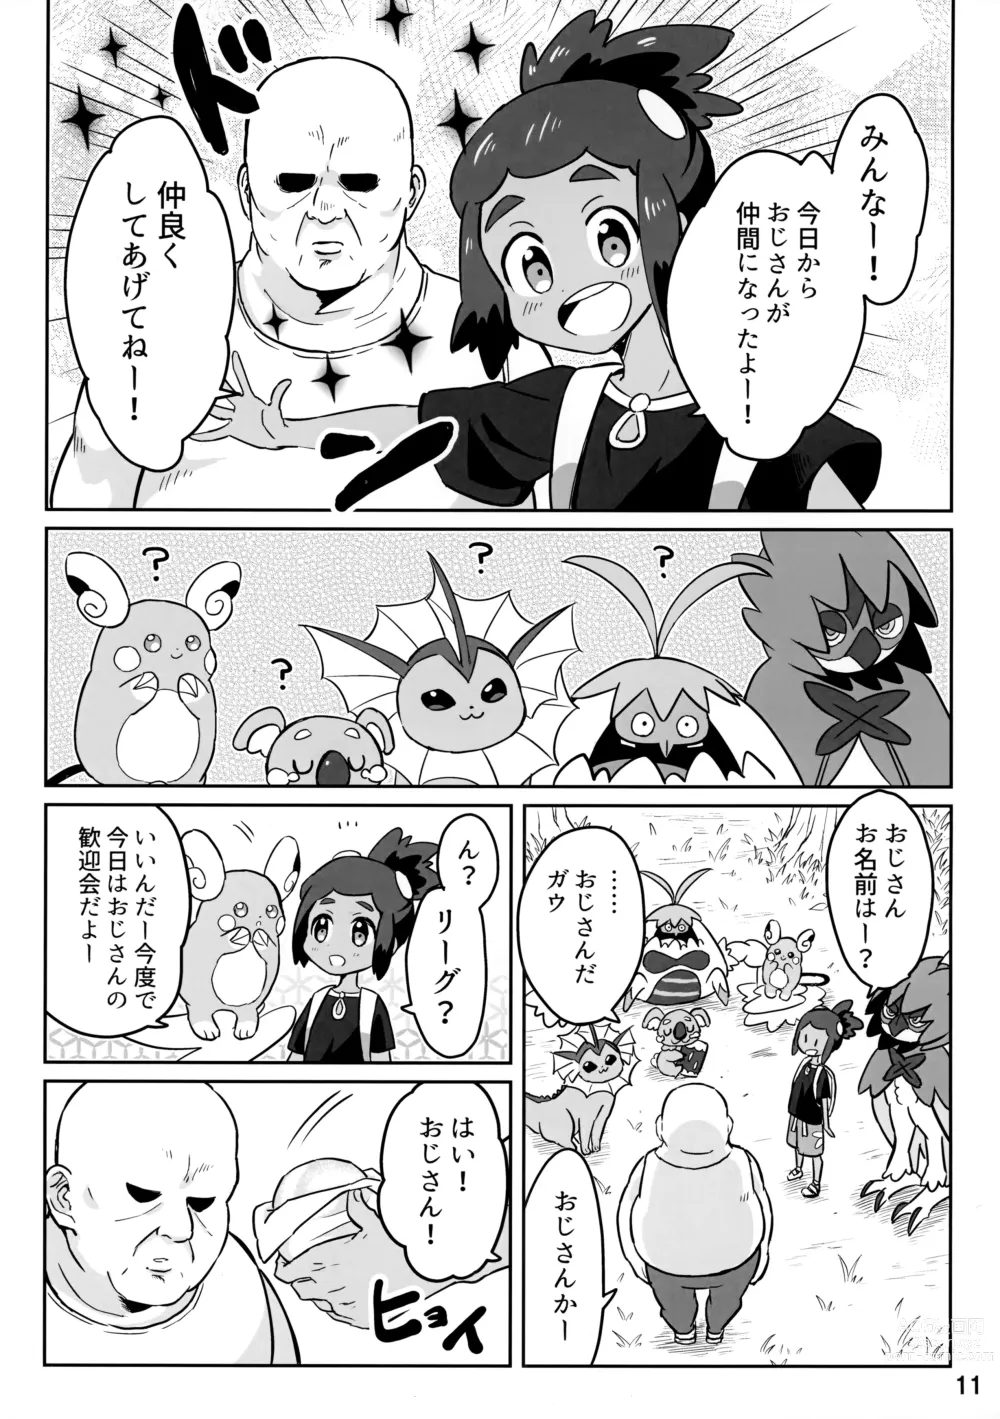 Page 10 of doujinshi Hau-kun ga Oji-san o Temochi ni Kuwaeru Hanashi